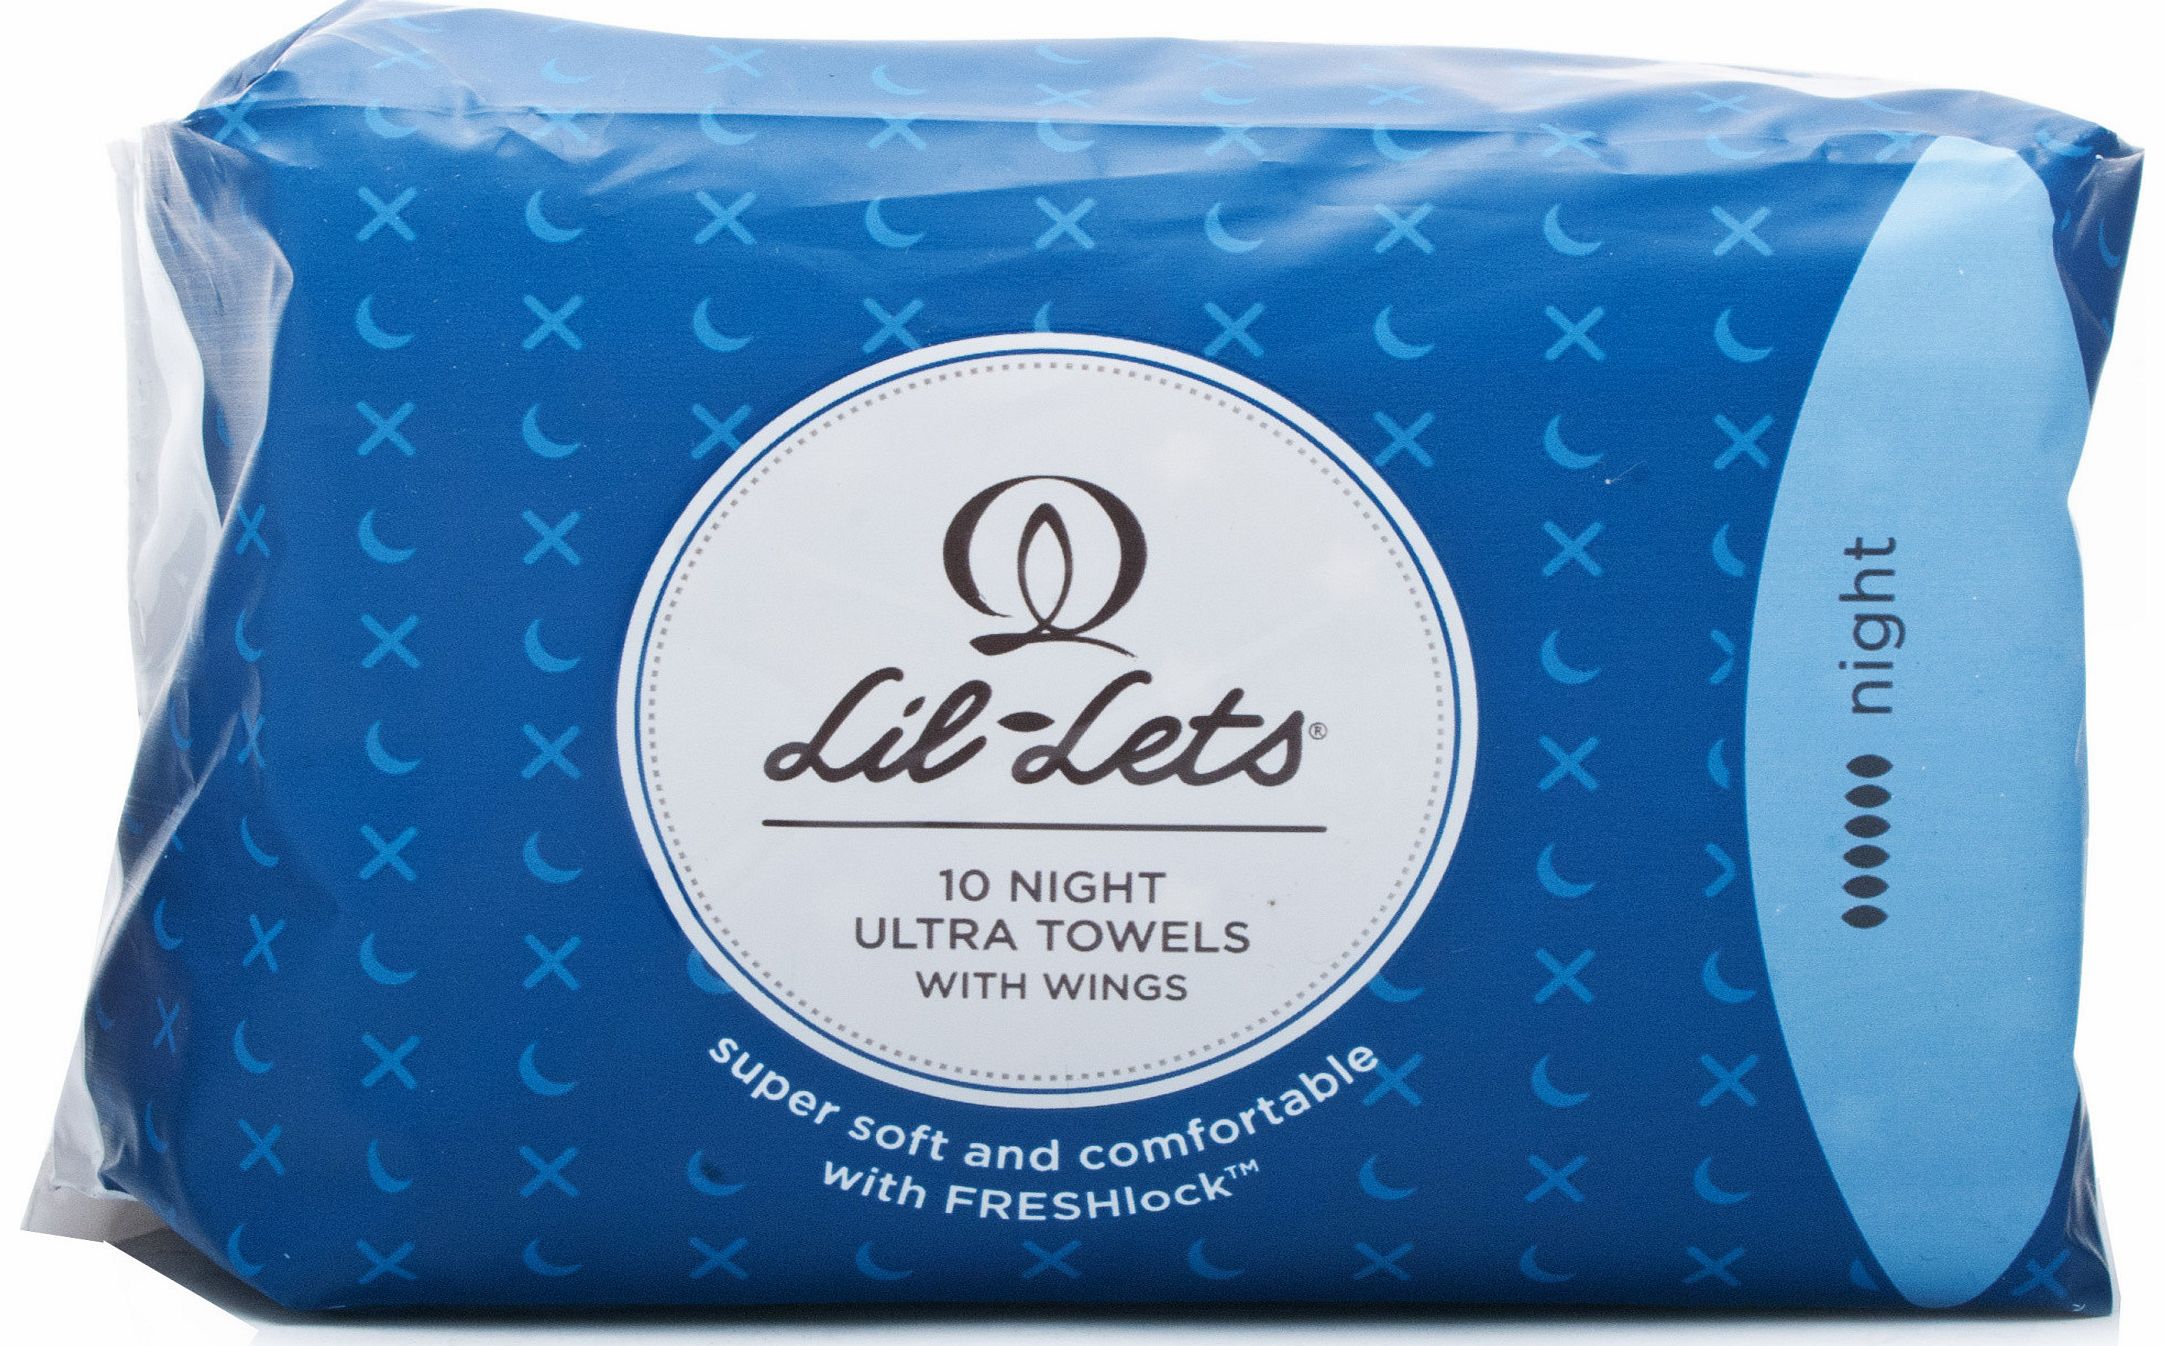 Lil-Lets Fresh Lock Ultra Towels - Night